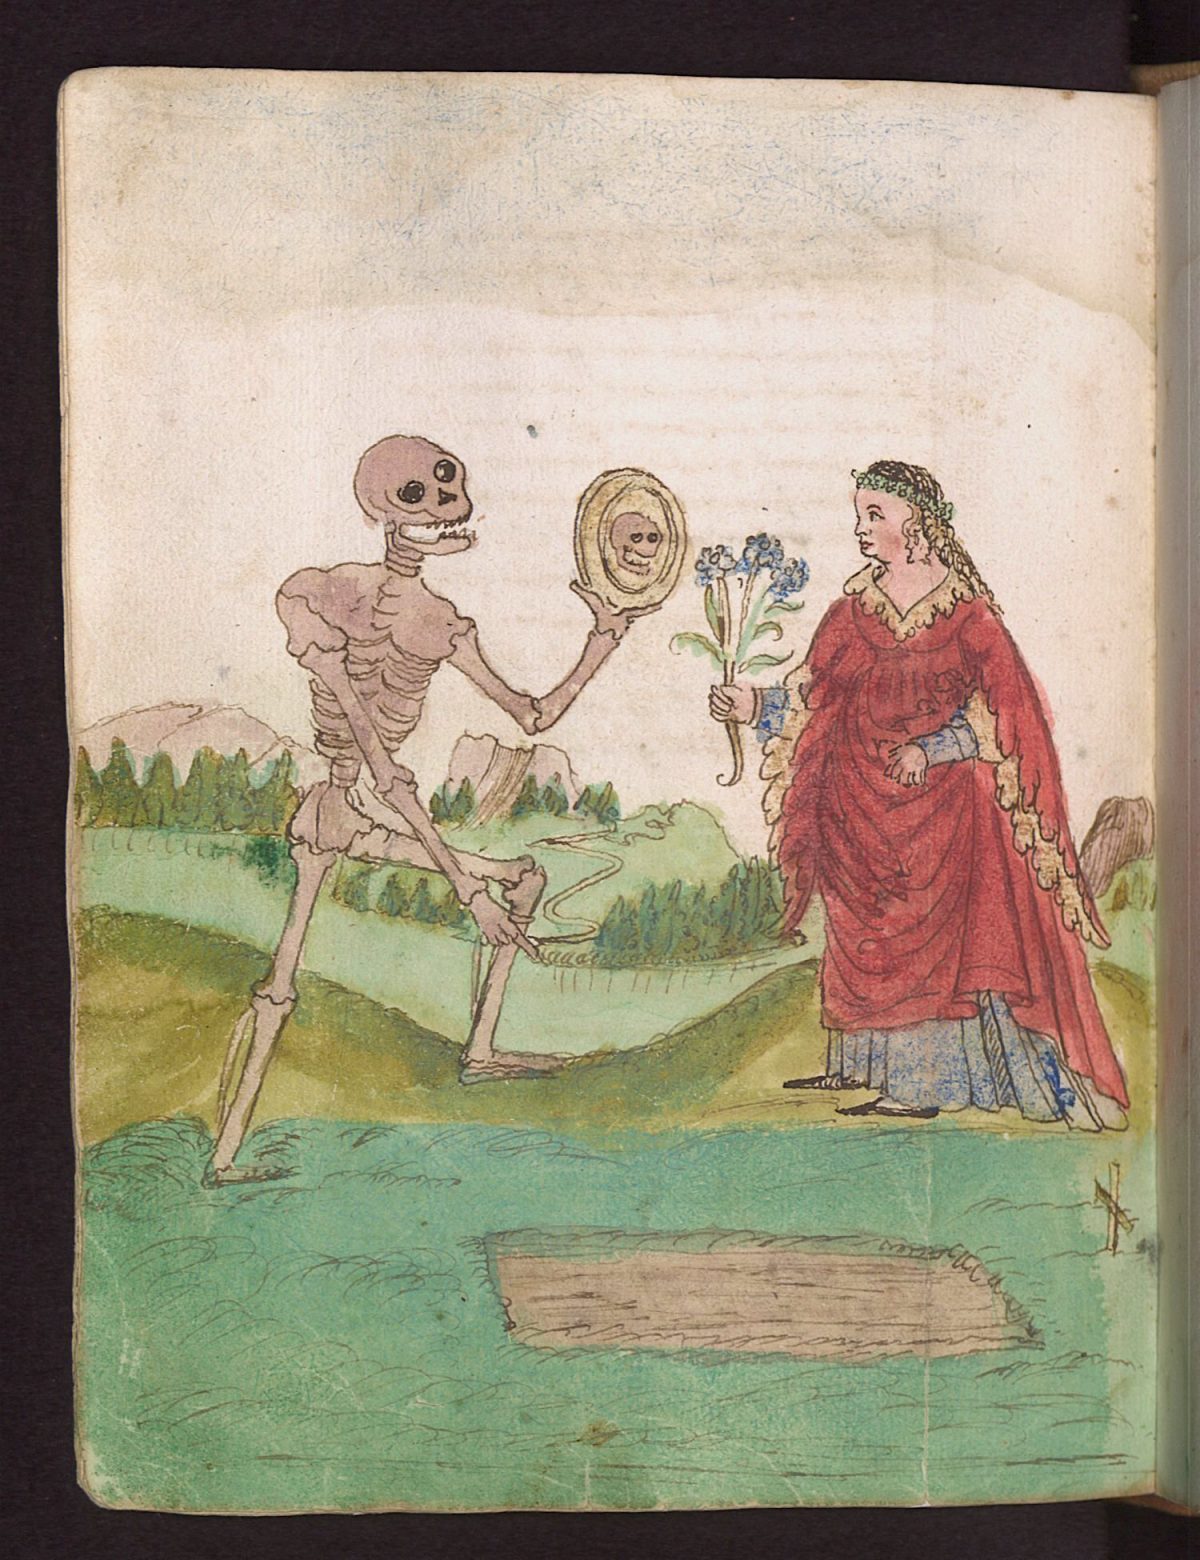 Wilhelm Werner von Zimmer, Dance of Death, illustration, 1540